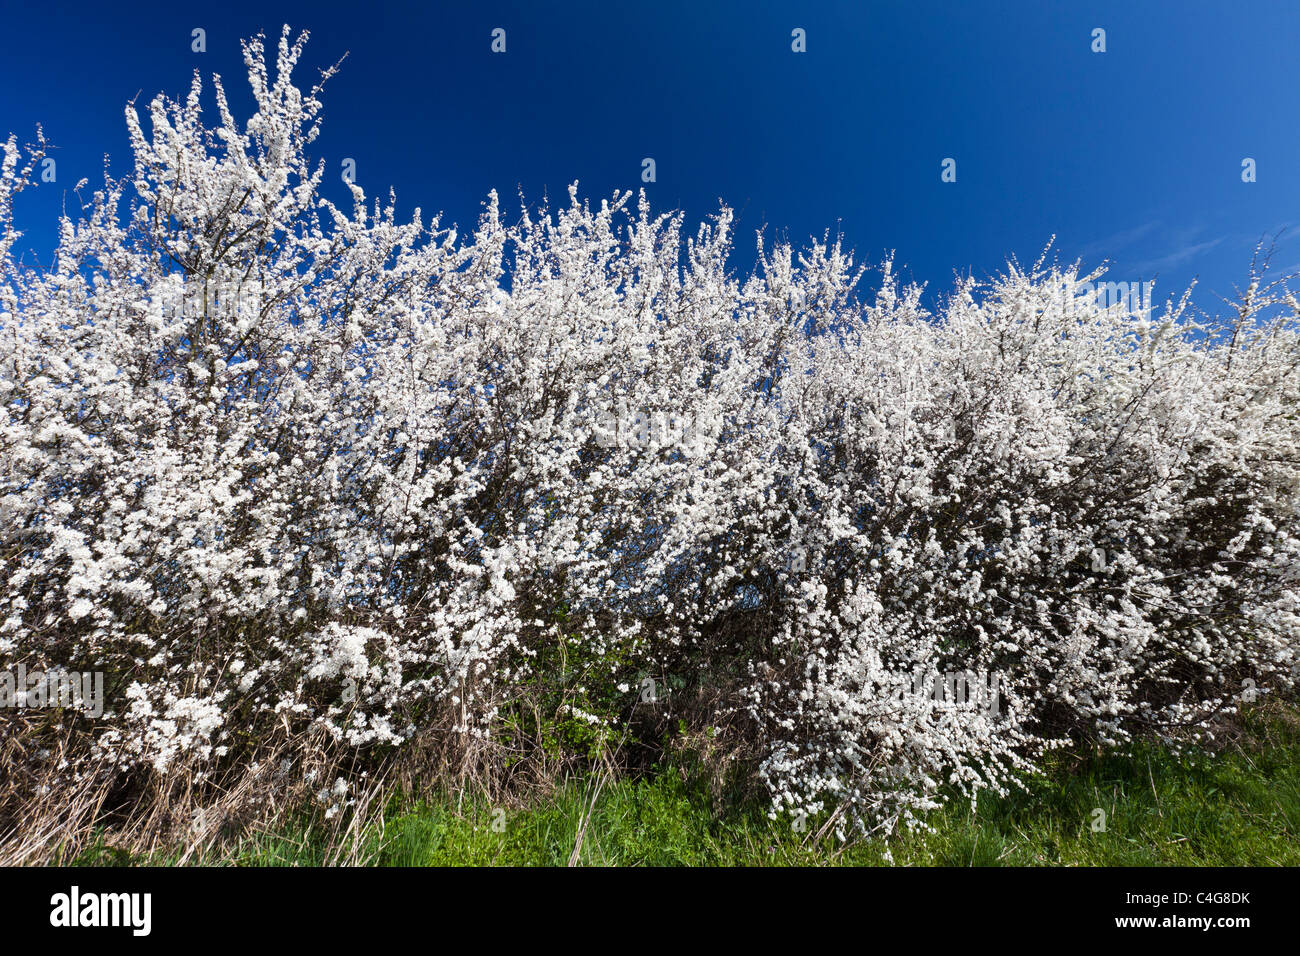 Flowering Blackthorn or Sloe hedge (Prunus spinosa), Lower Saxony, Germany Stock Photo